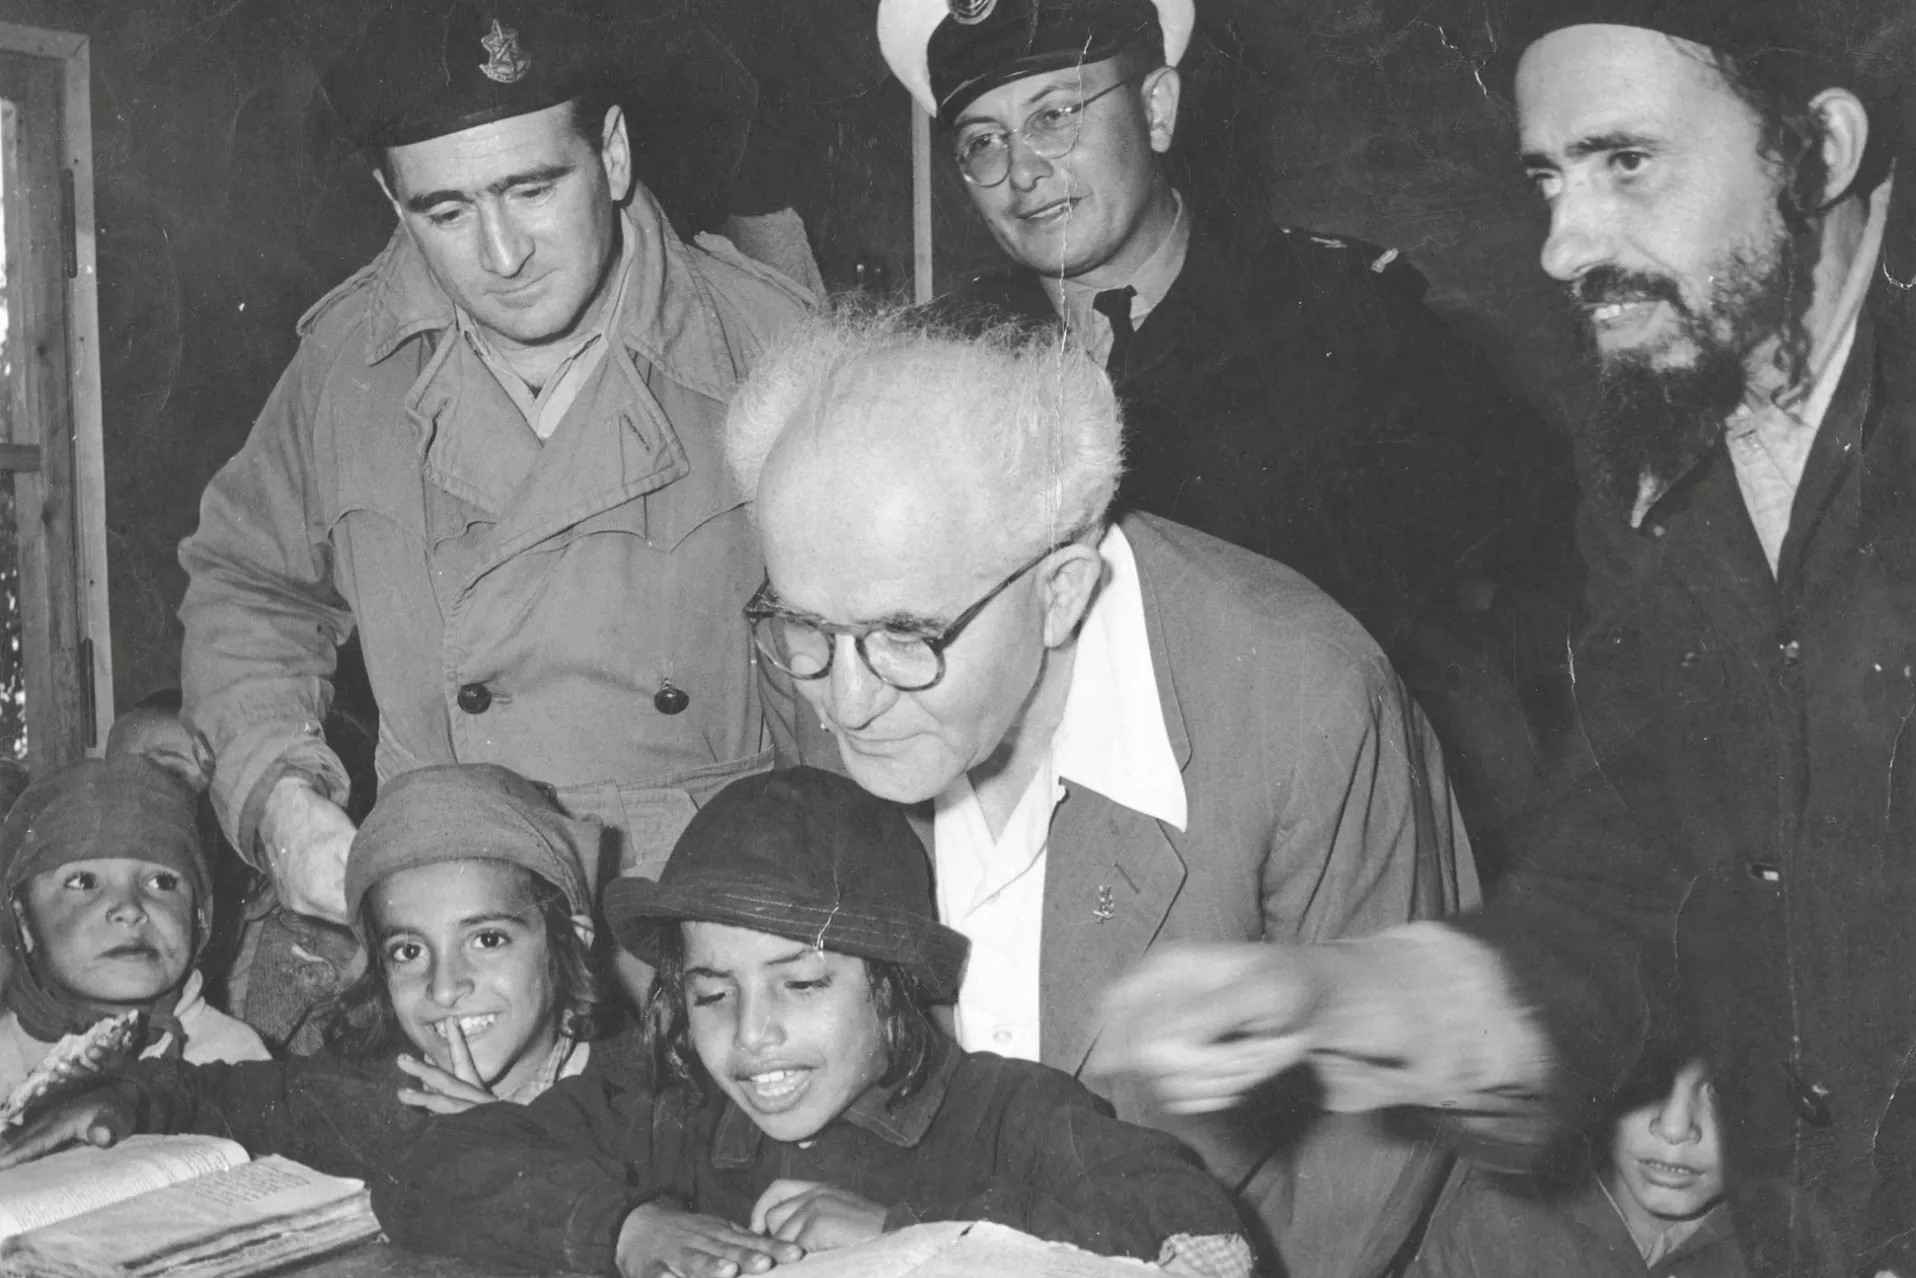 בן גוריון עם ילדים עולי תימן במעברה, בוחן ילדים בקריאה, ב-1950 (צילום: באדיבות ארכיון צה"ל במשרד הביטחון)